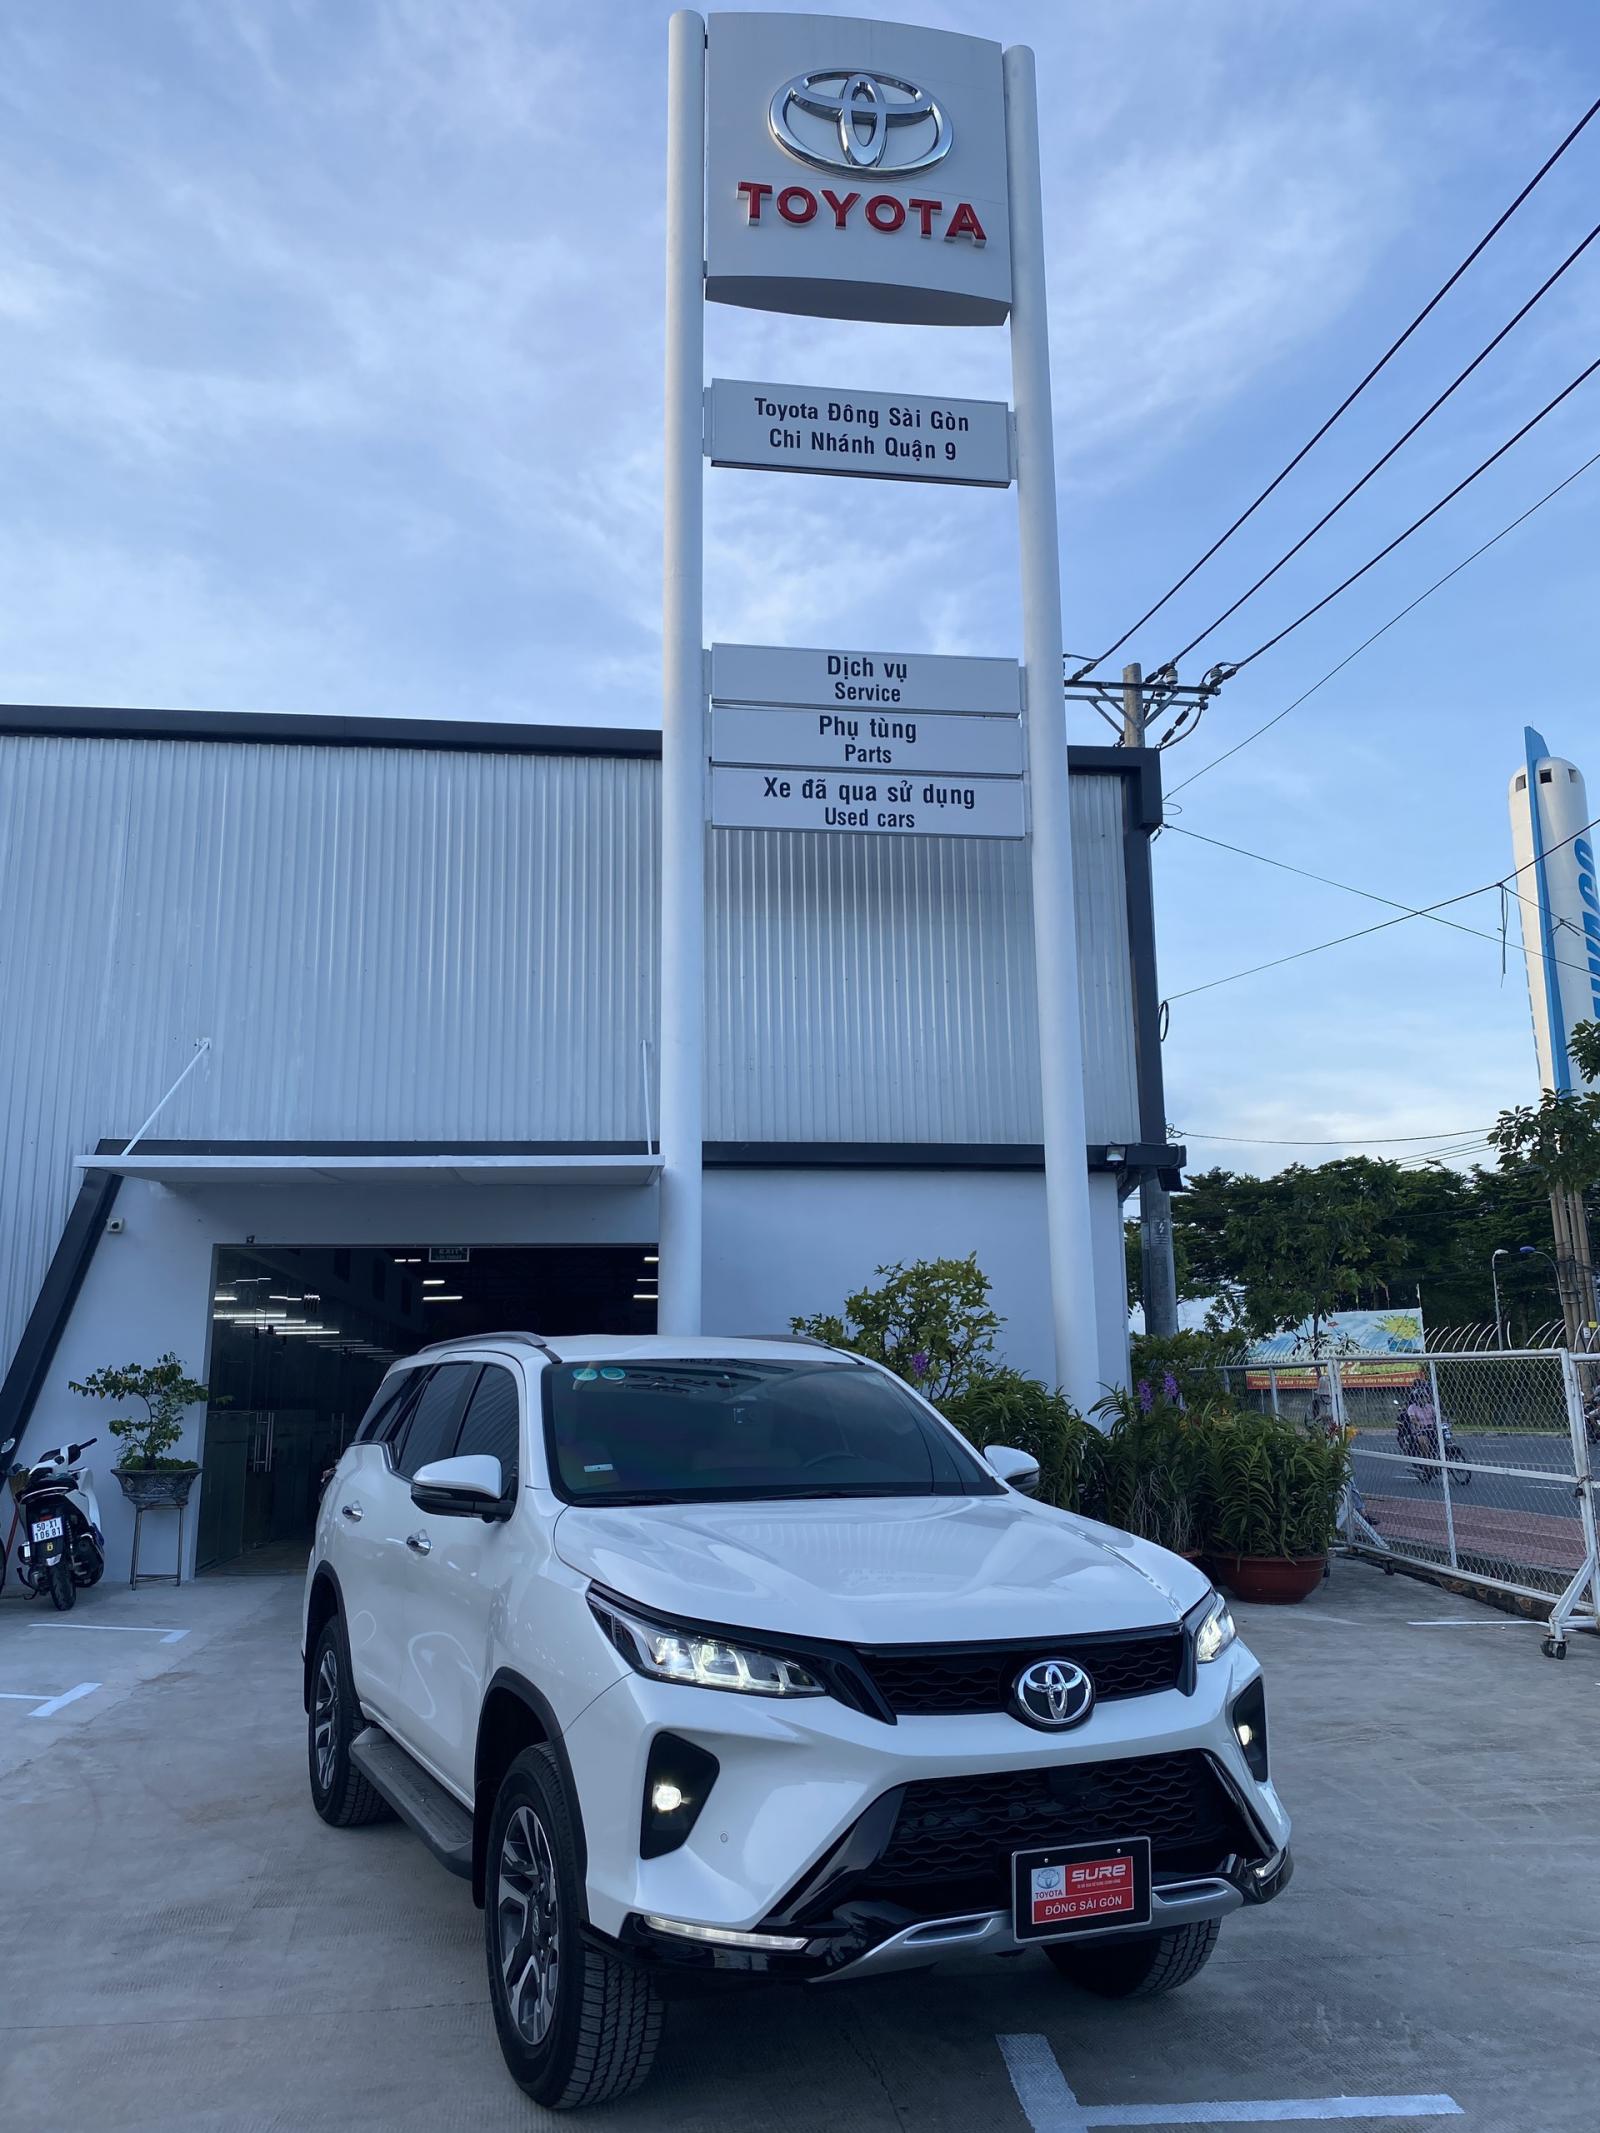 Toyota Đông Sài Gòn - Chi nhánh Quận 9